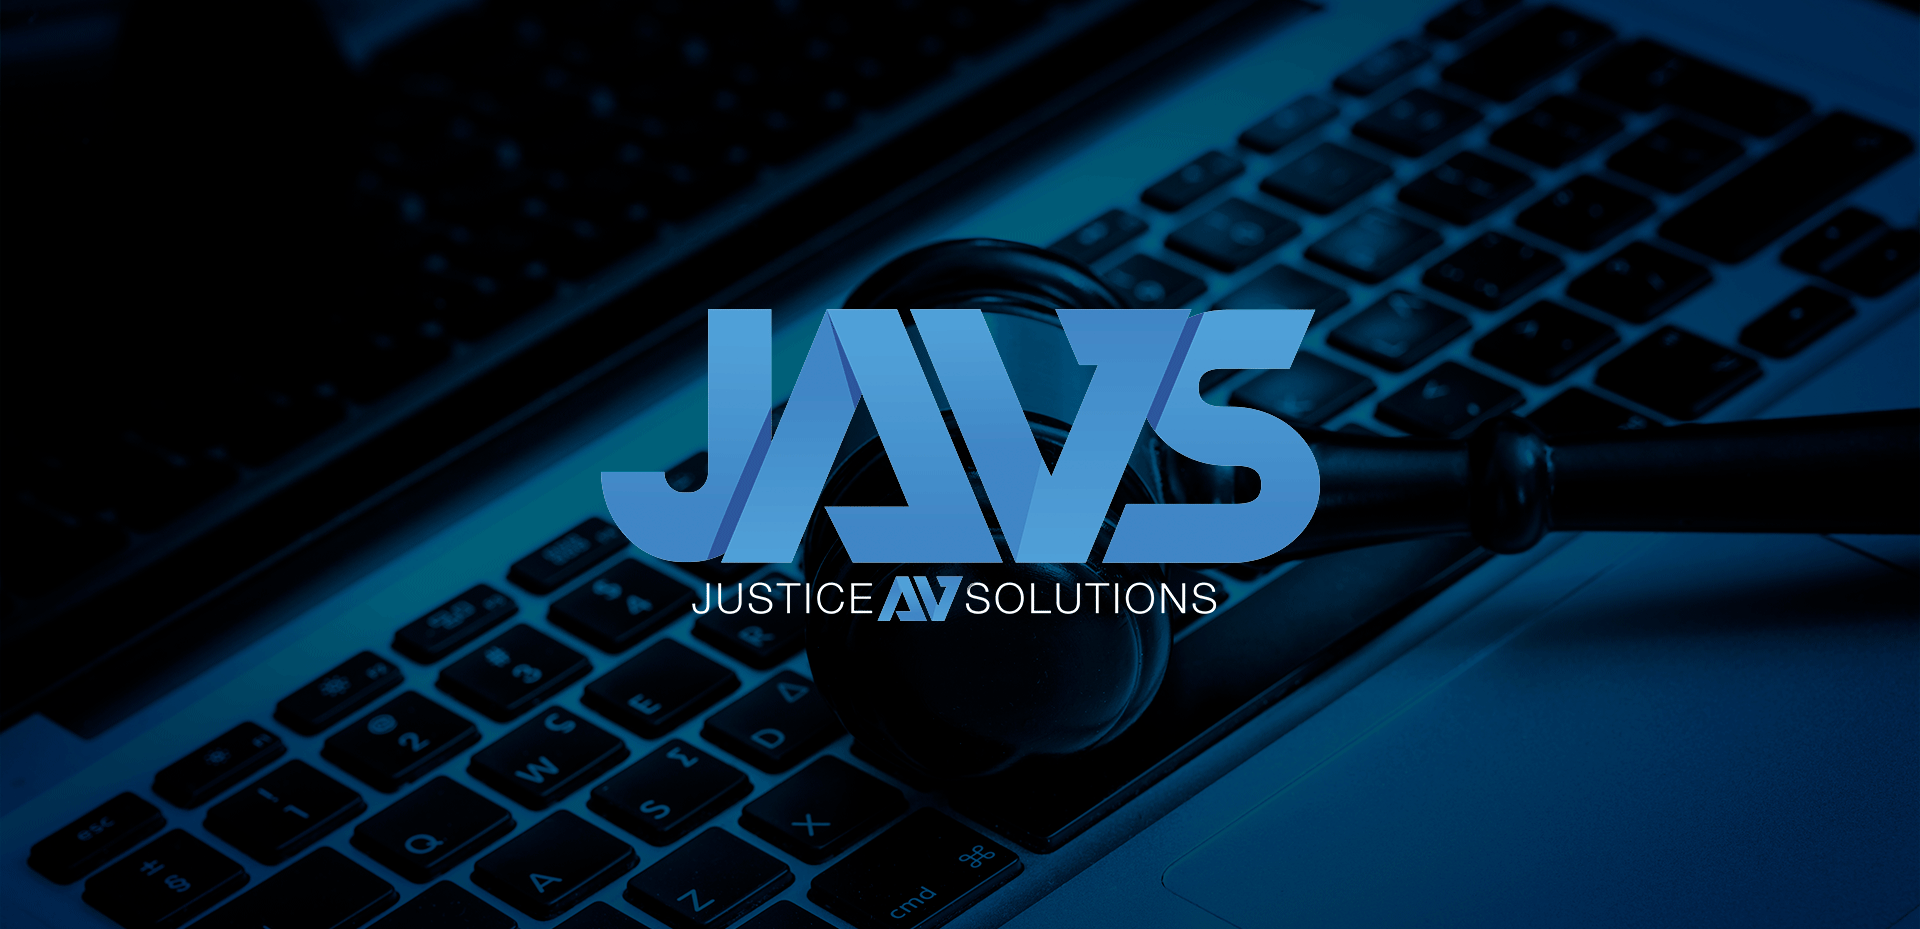 JAVS_sistemas_de_grabación_Justice_AV_Solutions